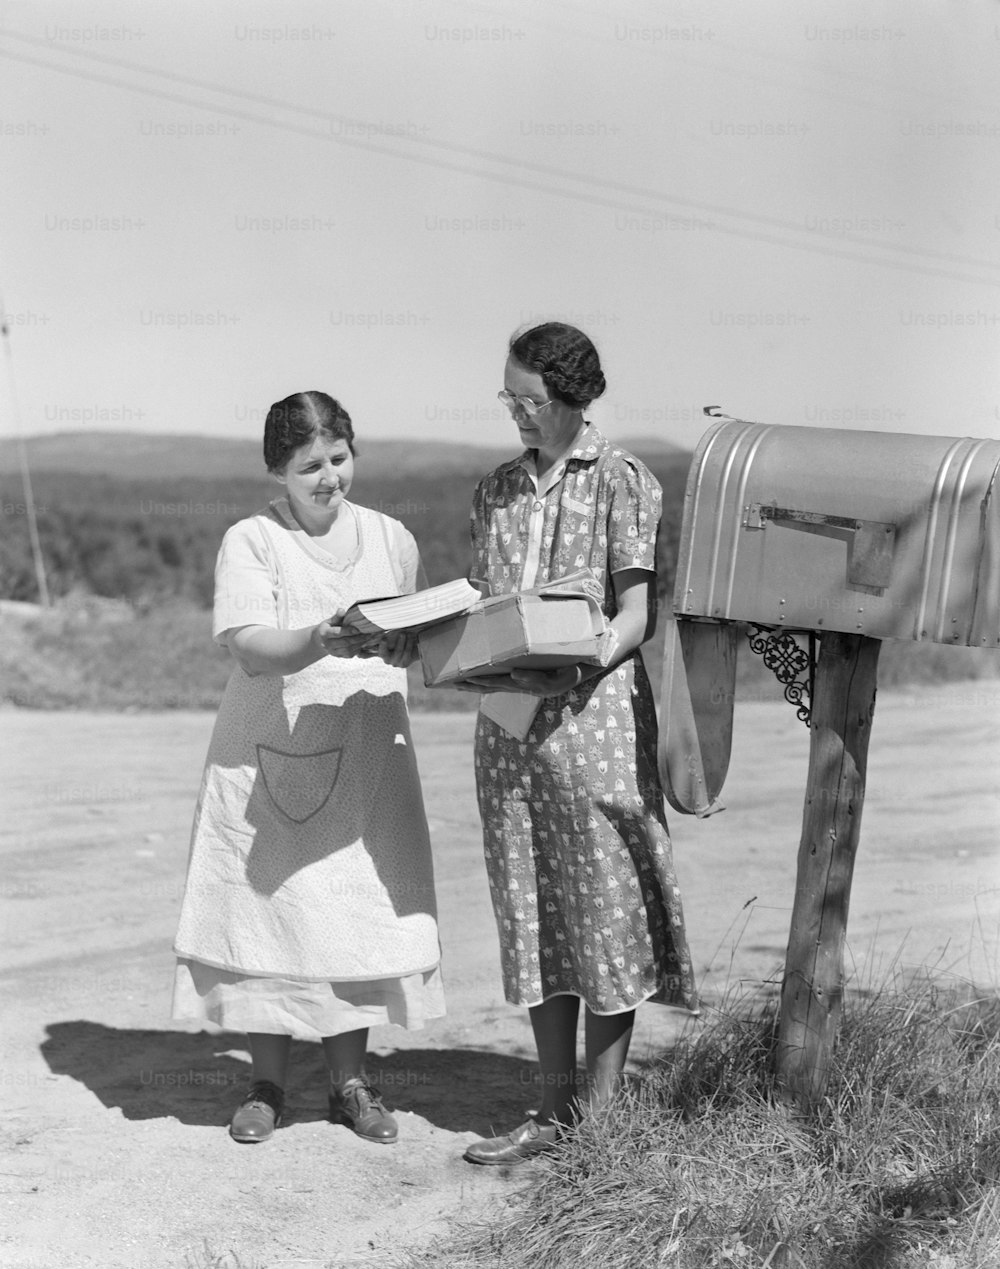 VEREINIGTE STAATEN - CIRCA 1940er Jahre: Zwei Frauen sammeln Post aus dem Briefkasten des Landes.